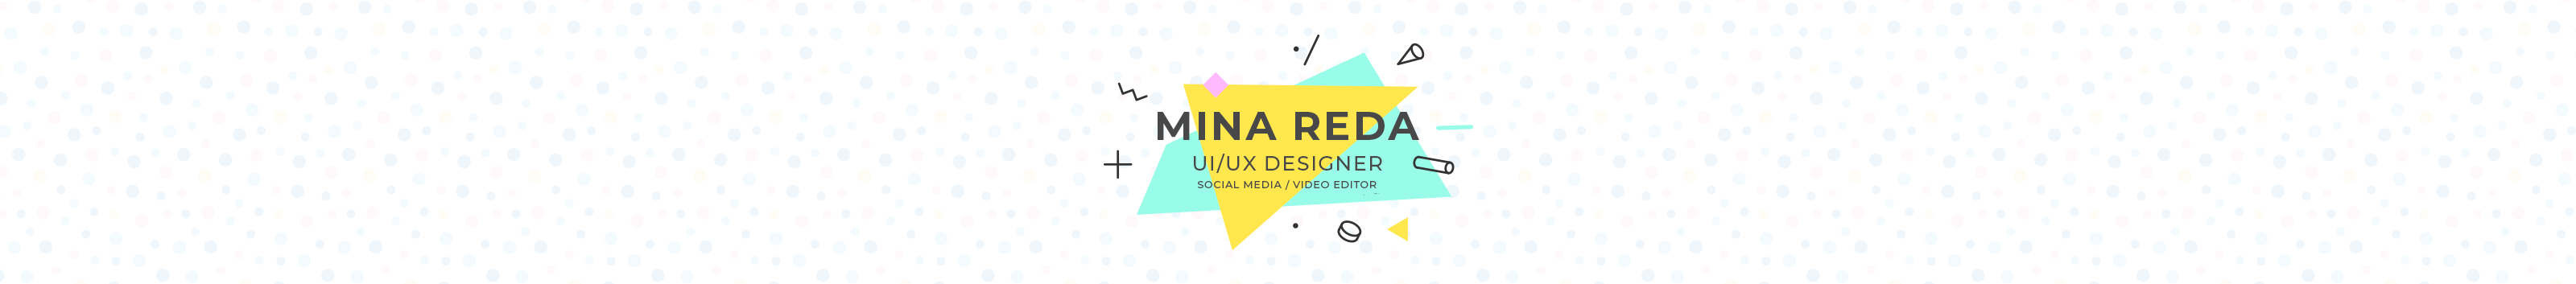 Banner de perfil de Mina Reda